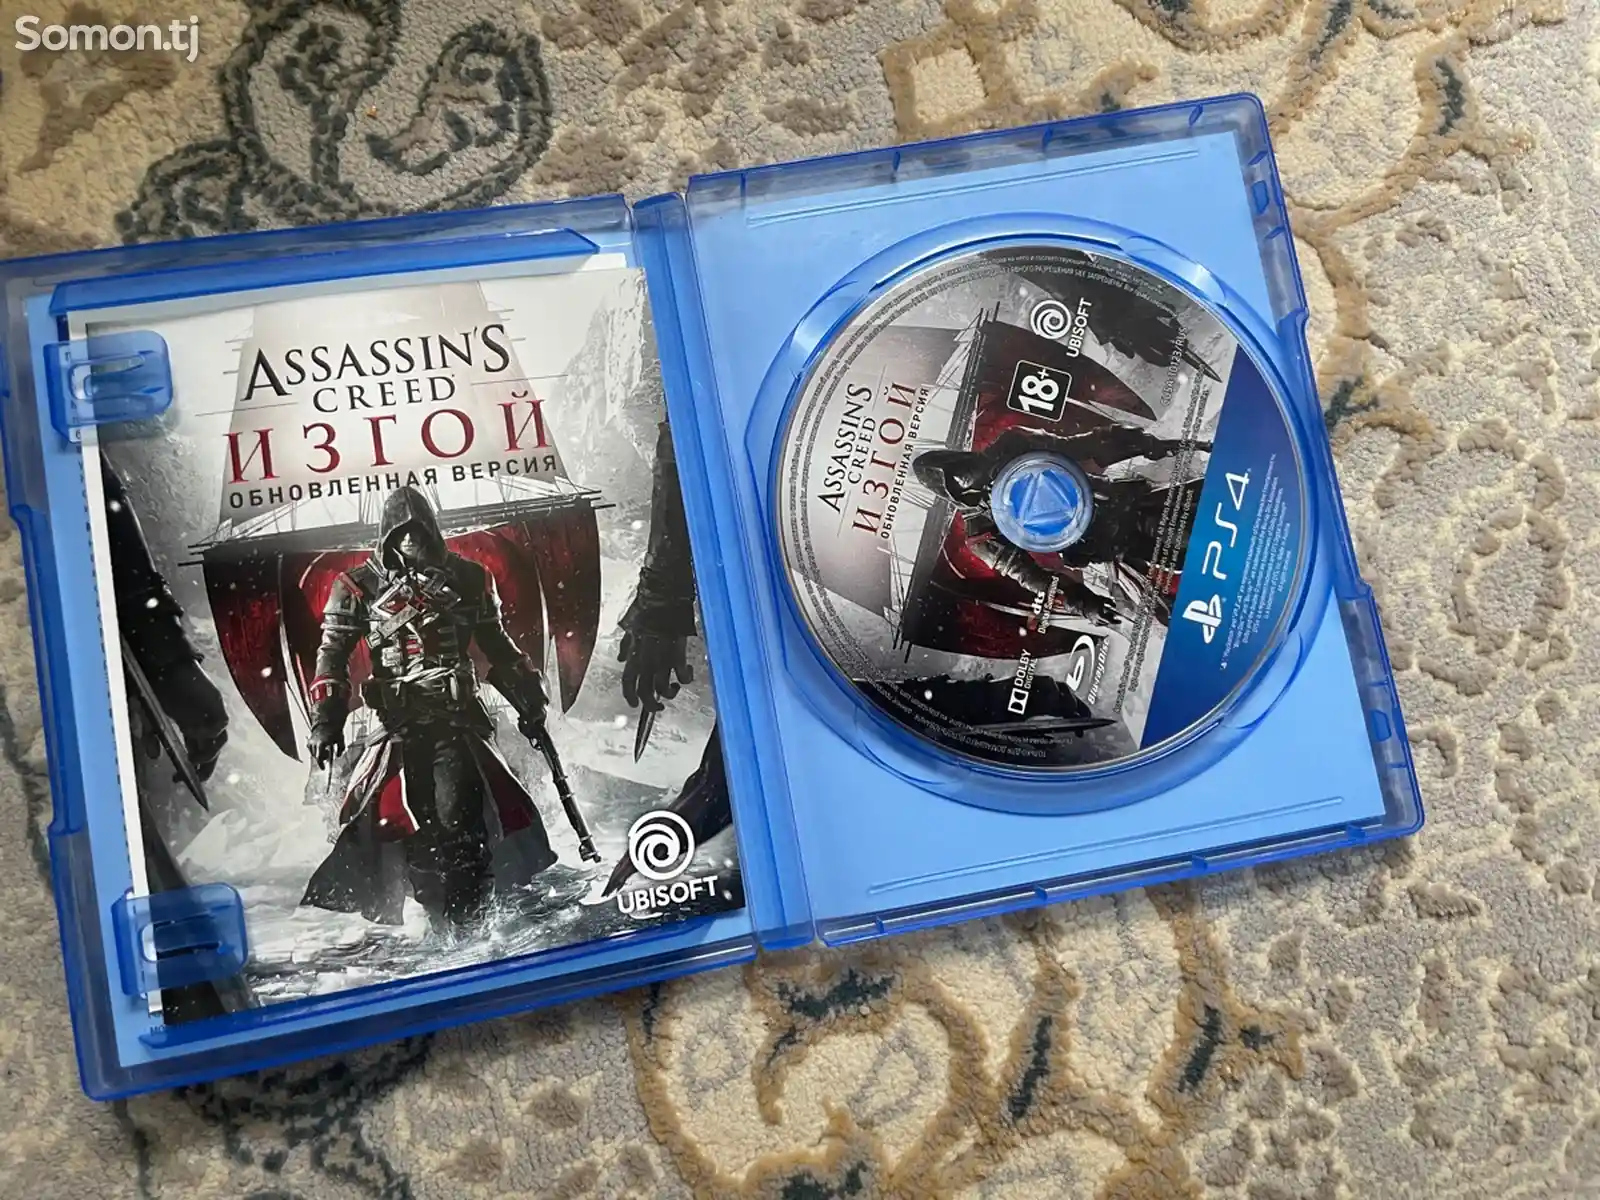 Игра Assassin's Creed - Rogue Изгой Remastered русская версия-2